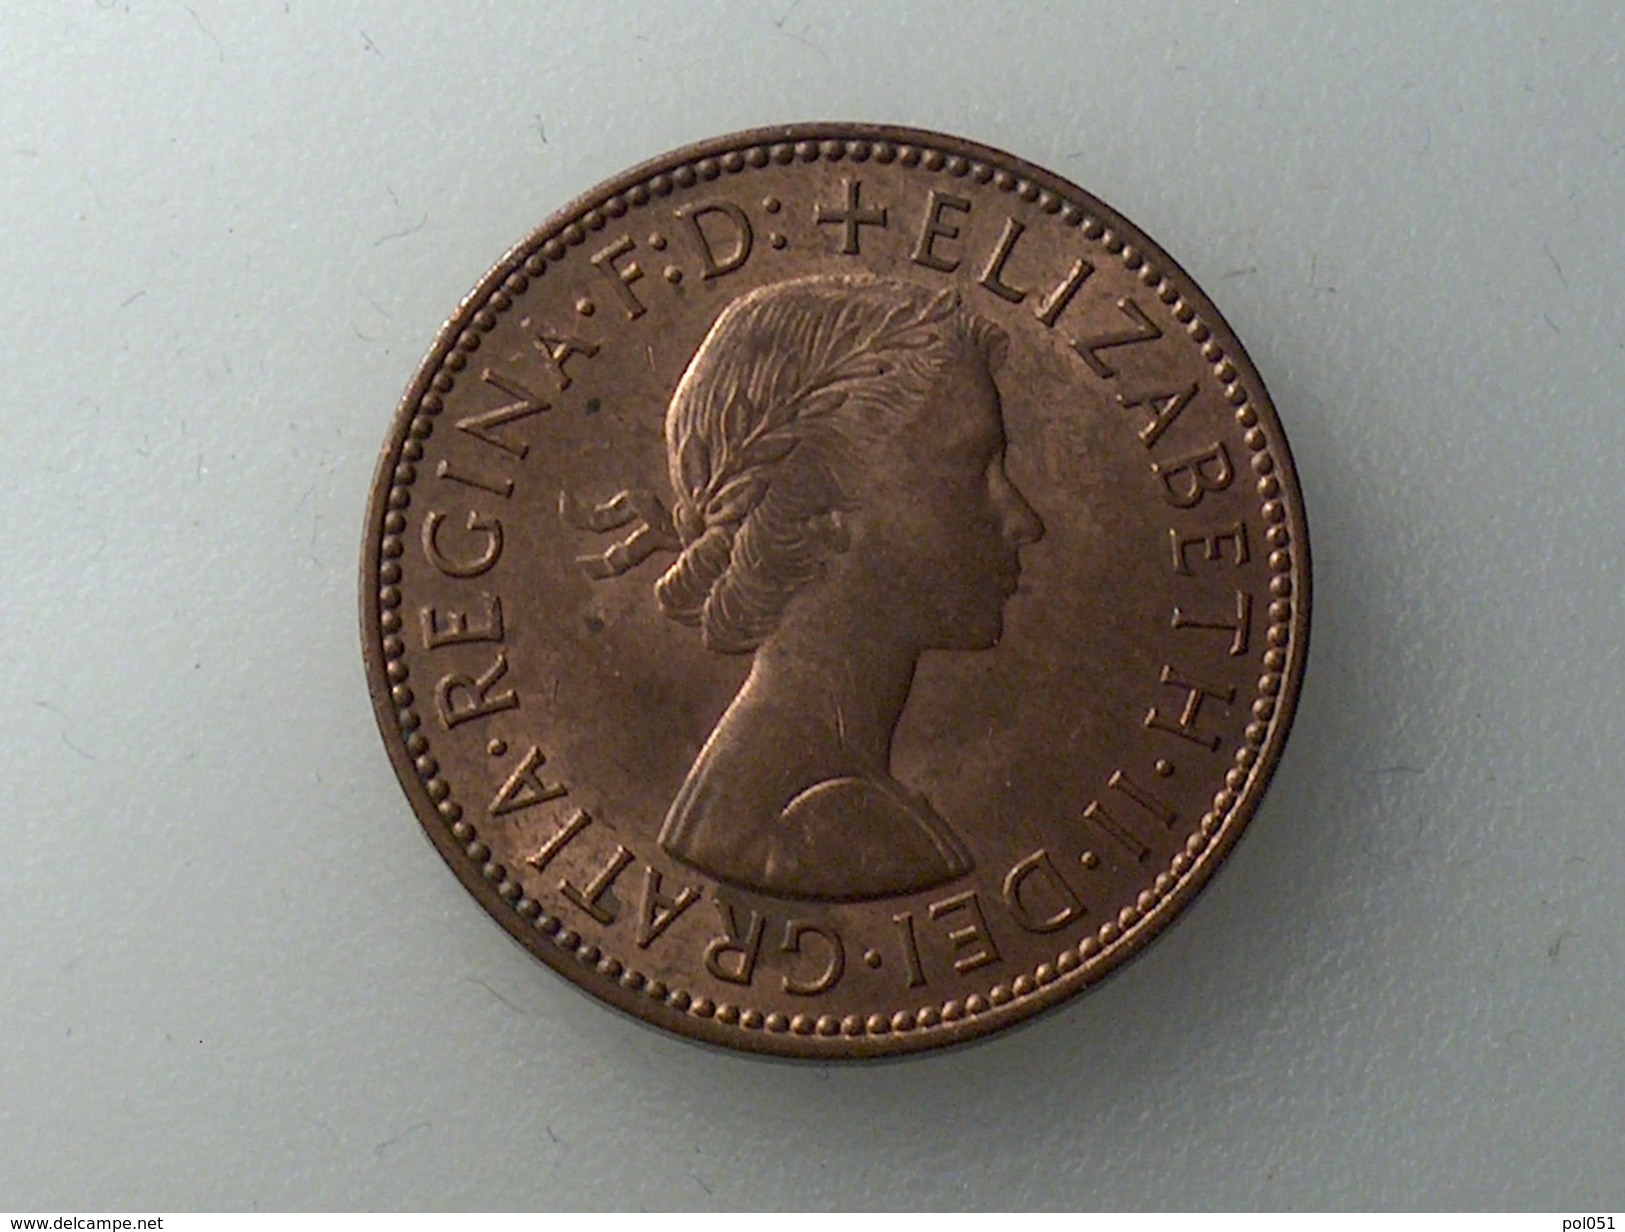 UK 1/2 PENNY 1967 HALF GRANDE BRETAGNE - C. 1/2 Penny